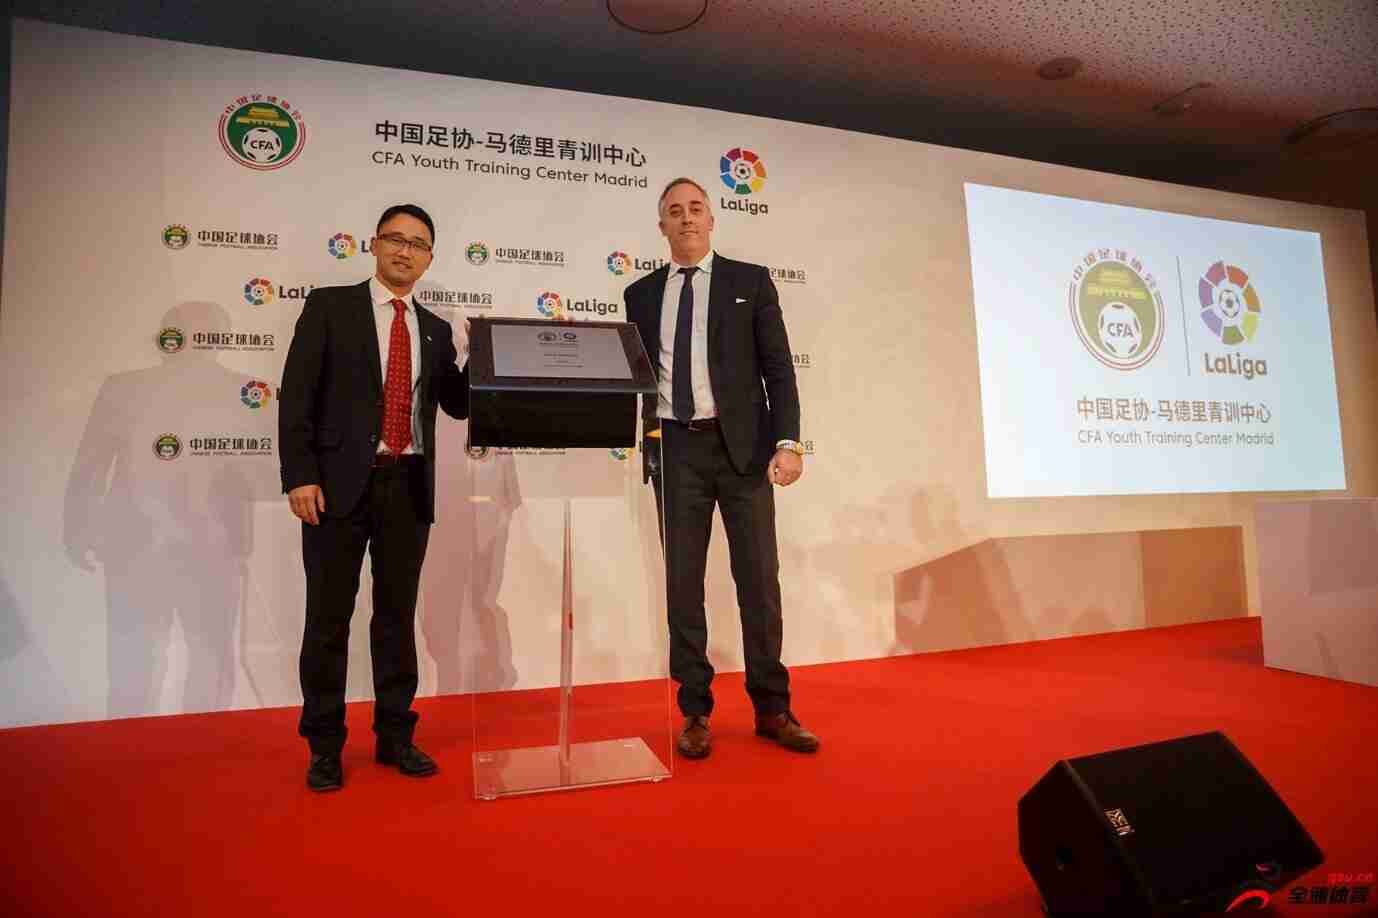 西甲联盟与中国足协在马德里成立永久性青训中心